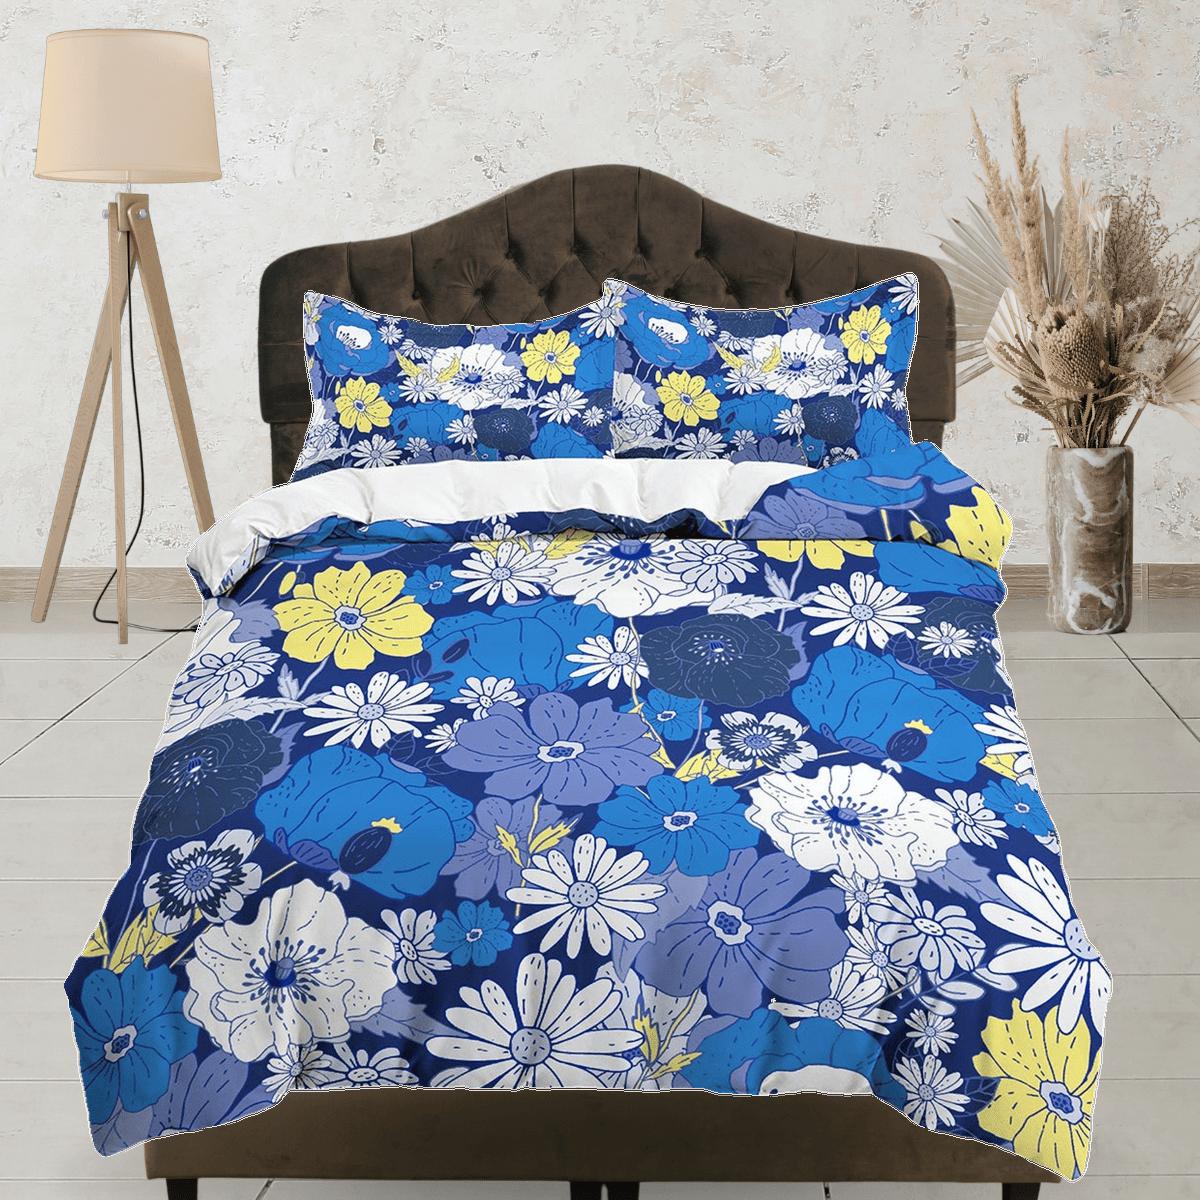 daintyduvet Blue daisies floral bedding, luxury duvet cover queen, king, boho duvet, designer bedding, aesthetic bedding, maximalist full size bedding